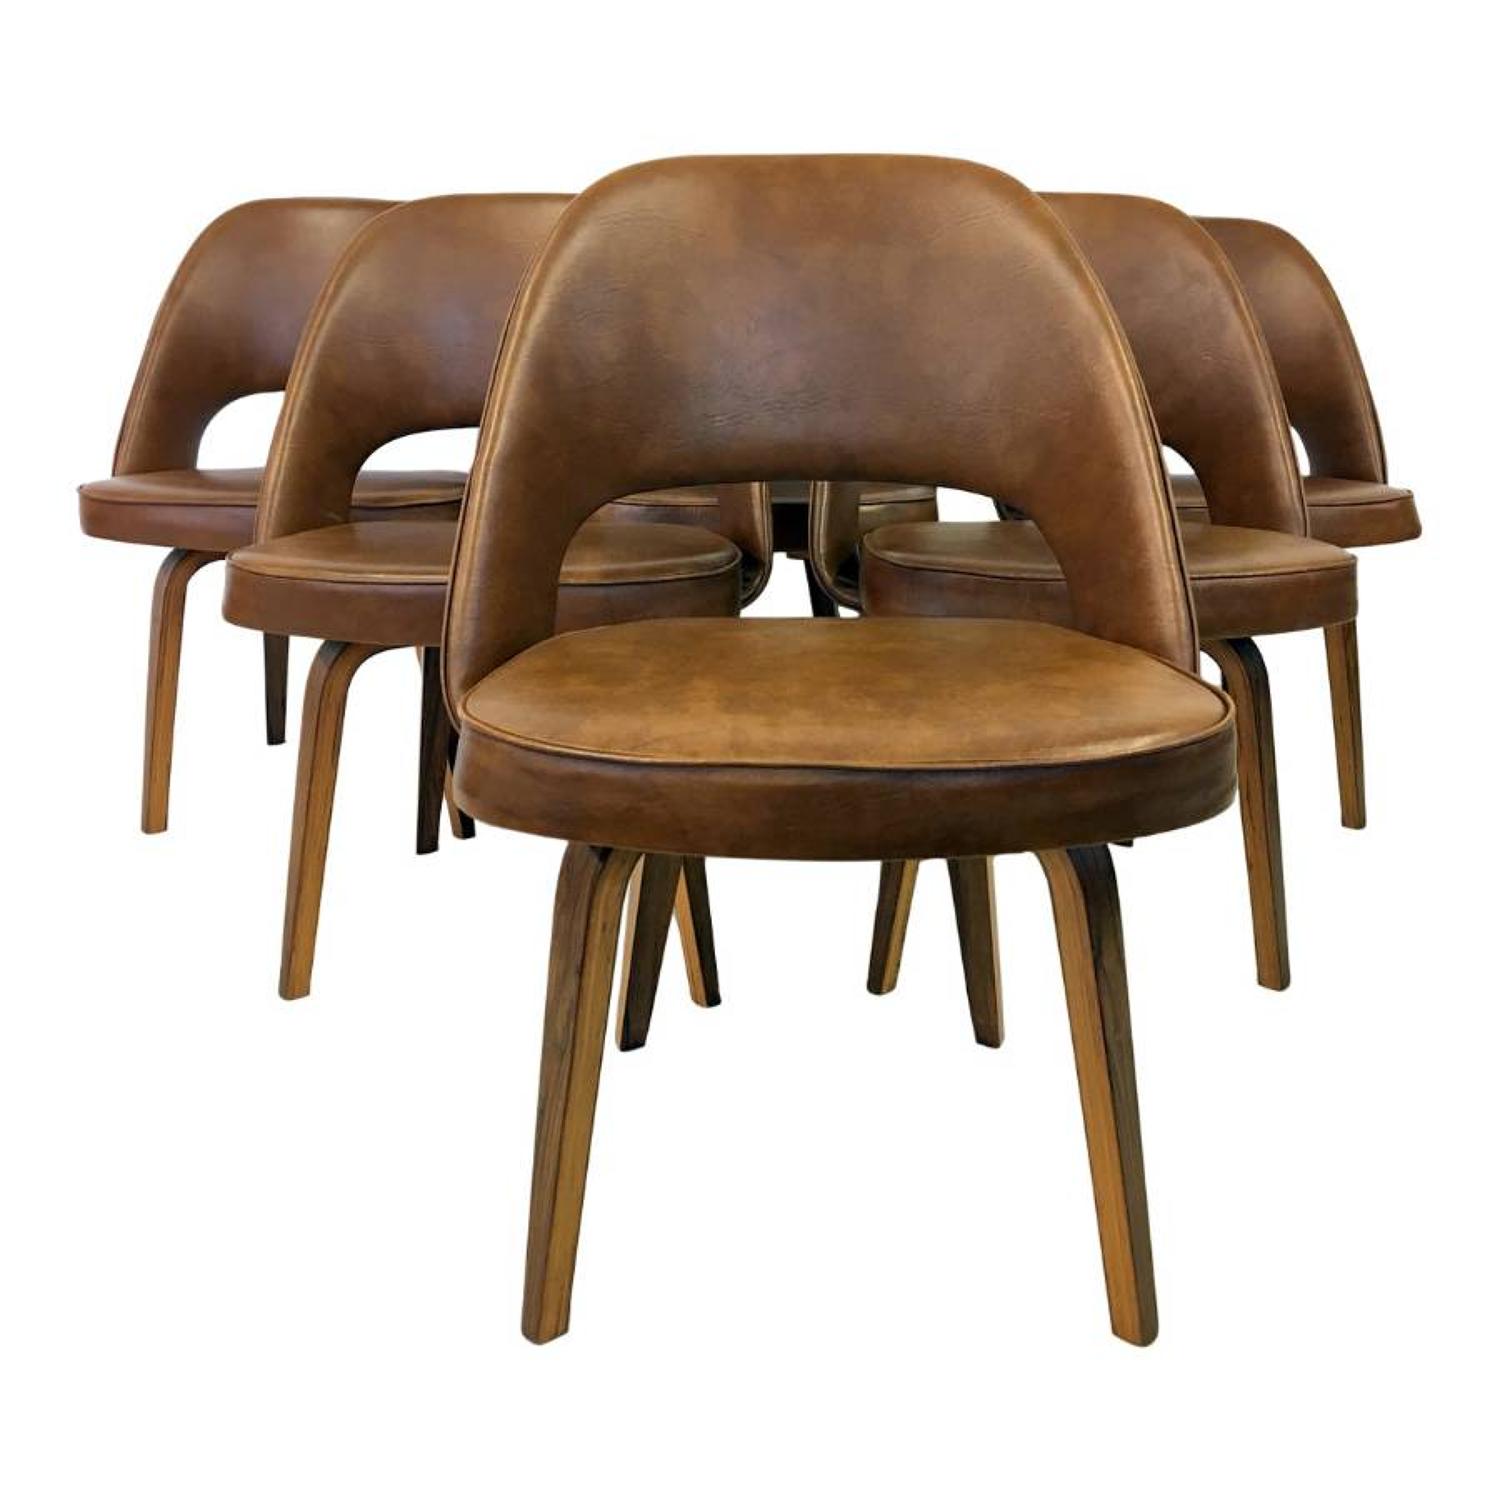 A set of six Executive chairs by Eero Saarinen